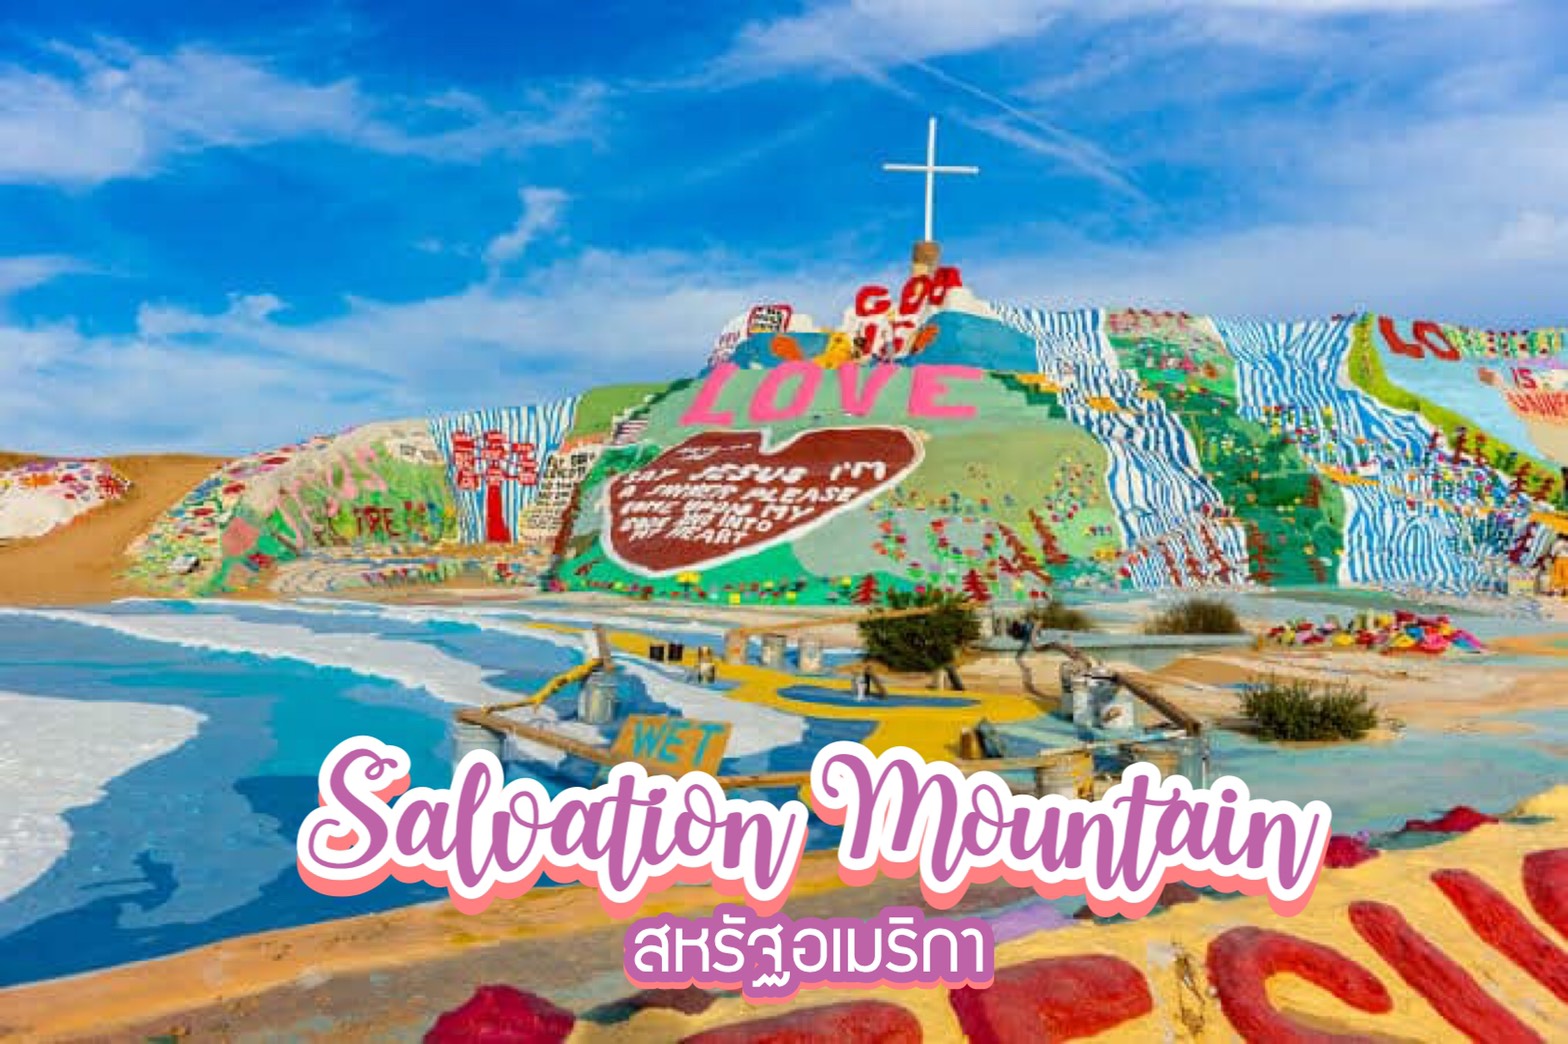 ภูเขาจากกองขยะ salvation mountain สหรัฐอเมริกา